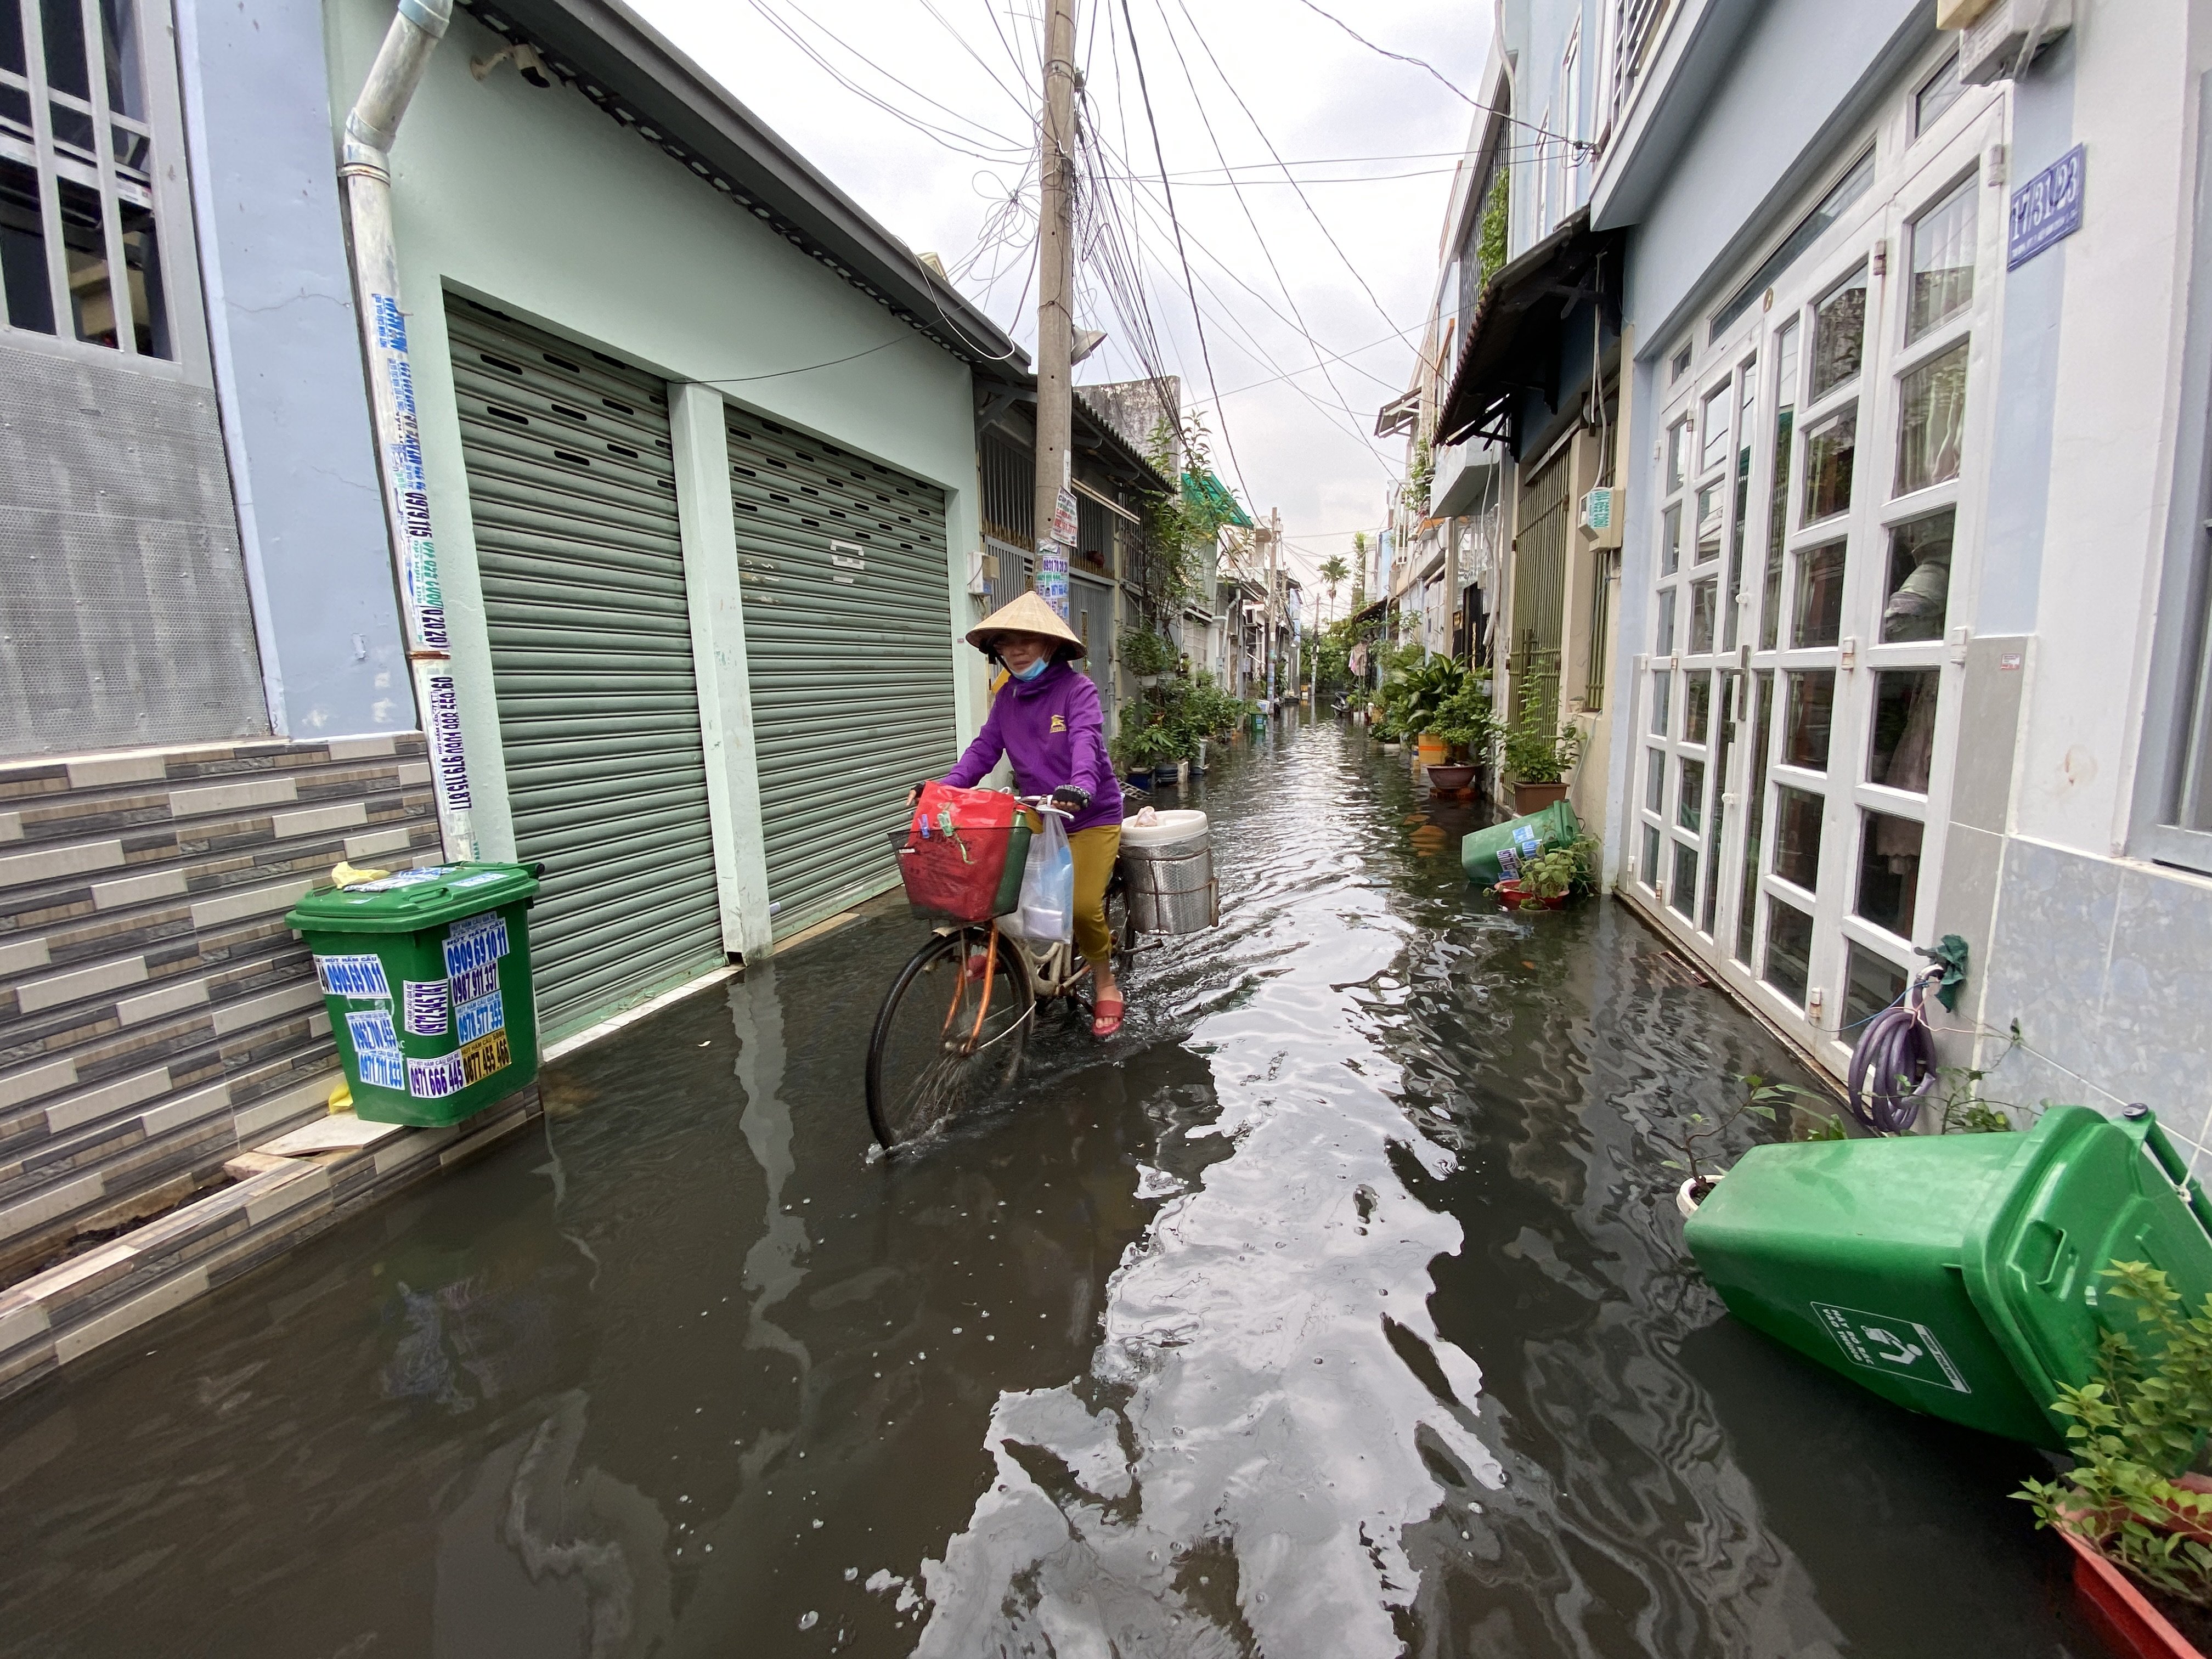 Sau trận mưa lớn vào cuối tháng 10, nhiều nơi ở phường Hiệp Bình Chánh, TP Thủ Đức, TP.HCM vẫn ngập từ 20cm-40cm. Khu vực con hẻm 5 đường 41 (phường Hiệp Bình Chánh) bị ngập sâu, nước lênh láng vào chiều 4/11.